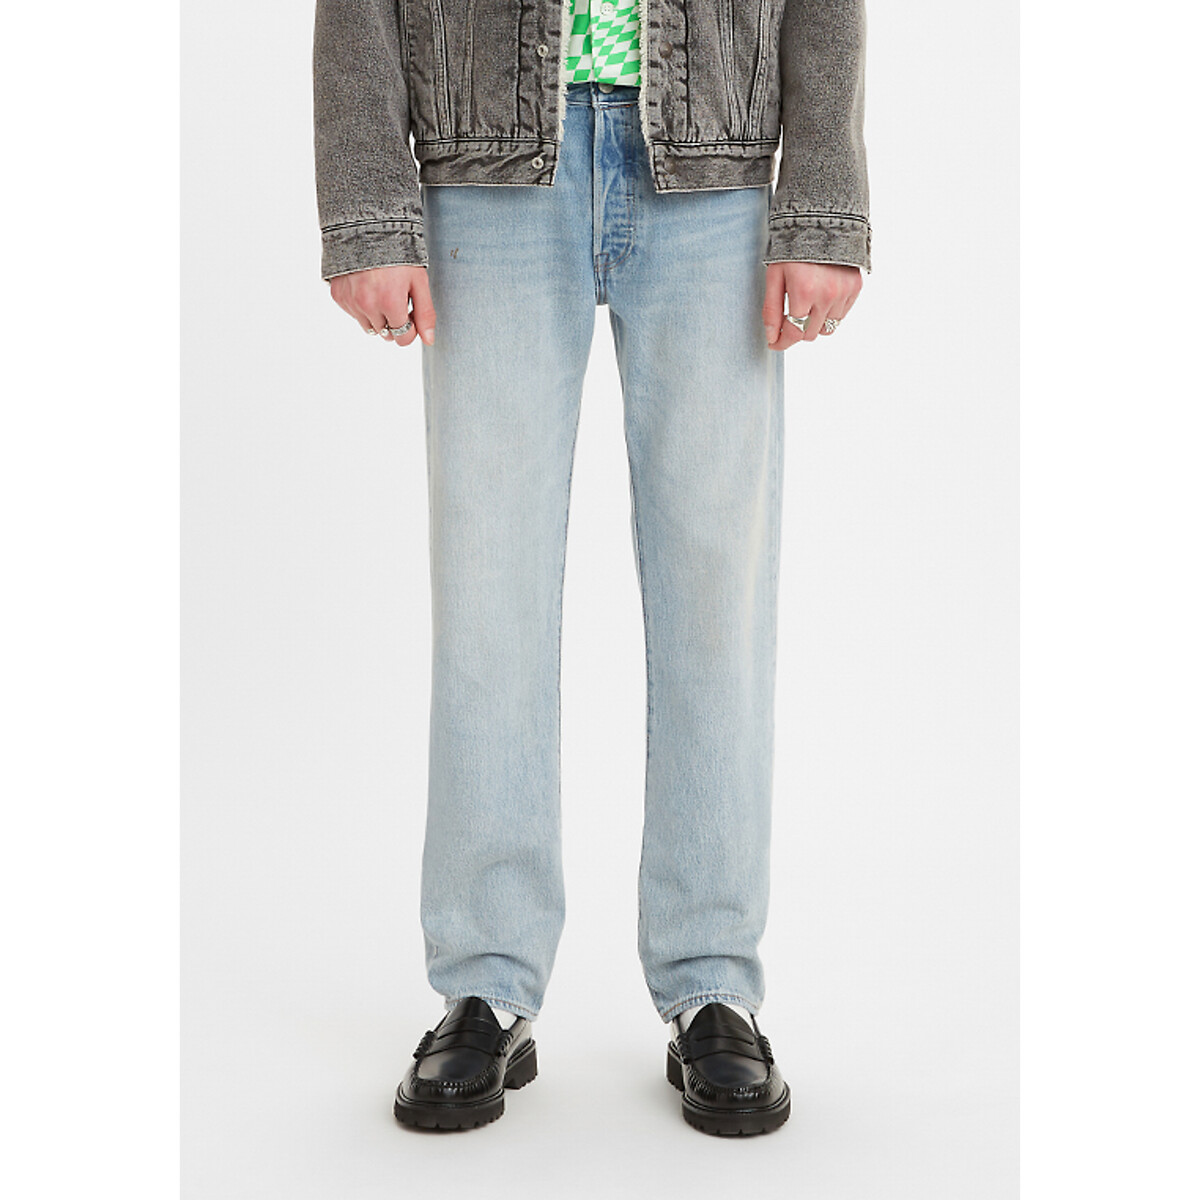 Levi's Rechte jeans 501